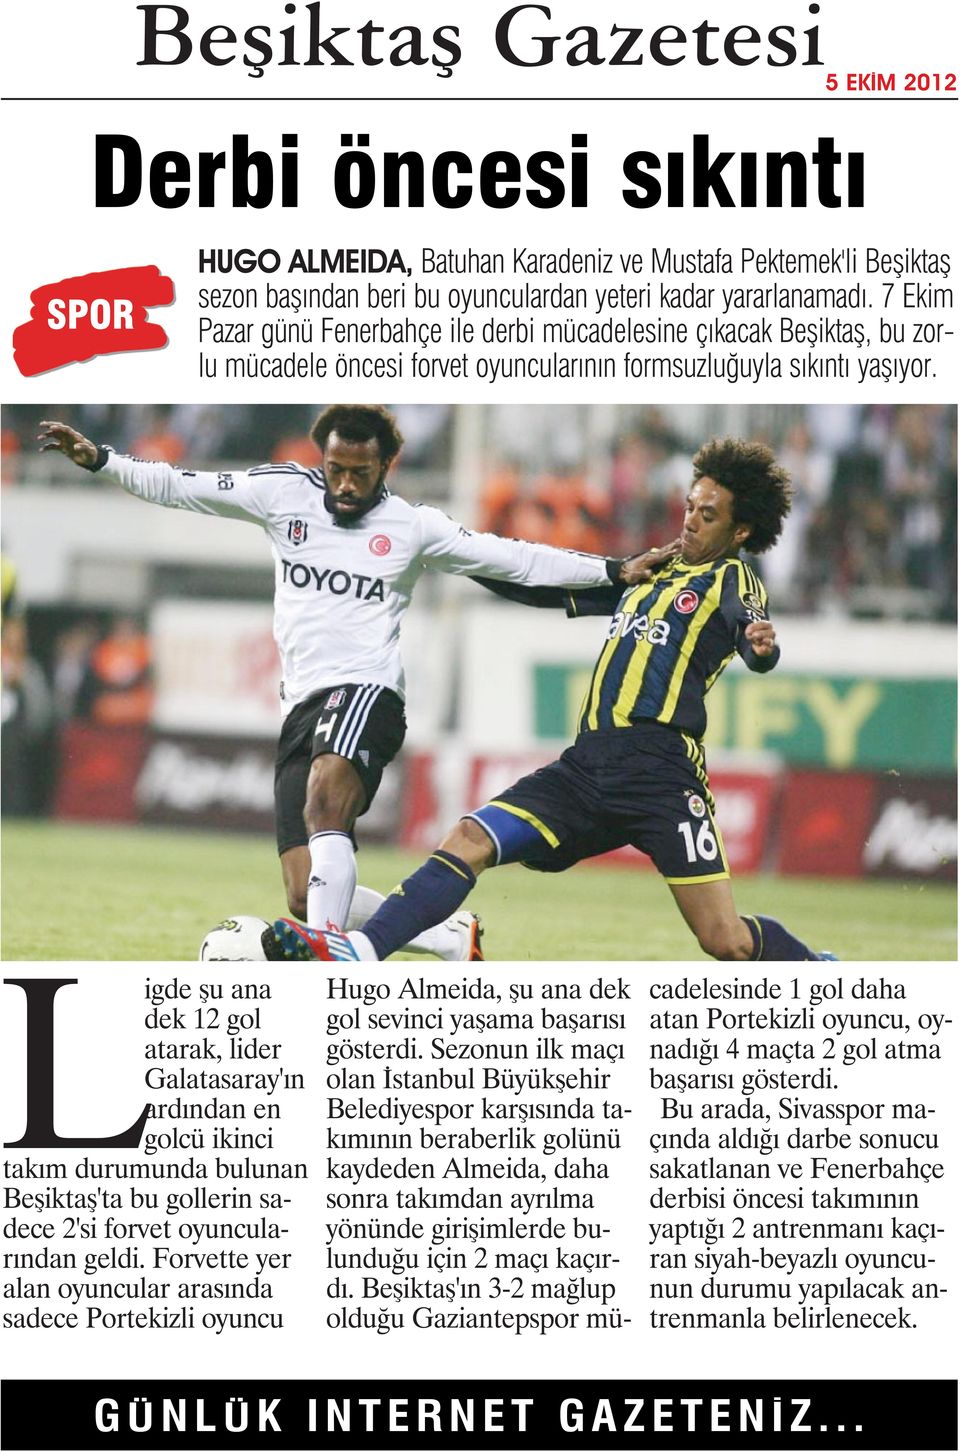 Ligde şu ana dek 12 gol atarak, lider Galatasaray'ın ardından en golcü ikinci takım durumunda bulunan Beşiktaş'ta bu gollerin sadece 2'si forvet oyuncularından geldi.